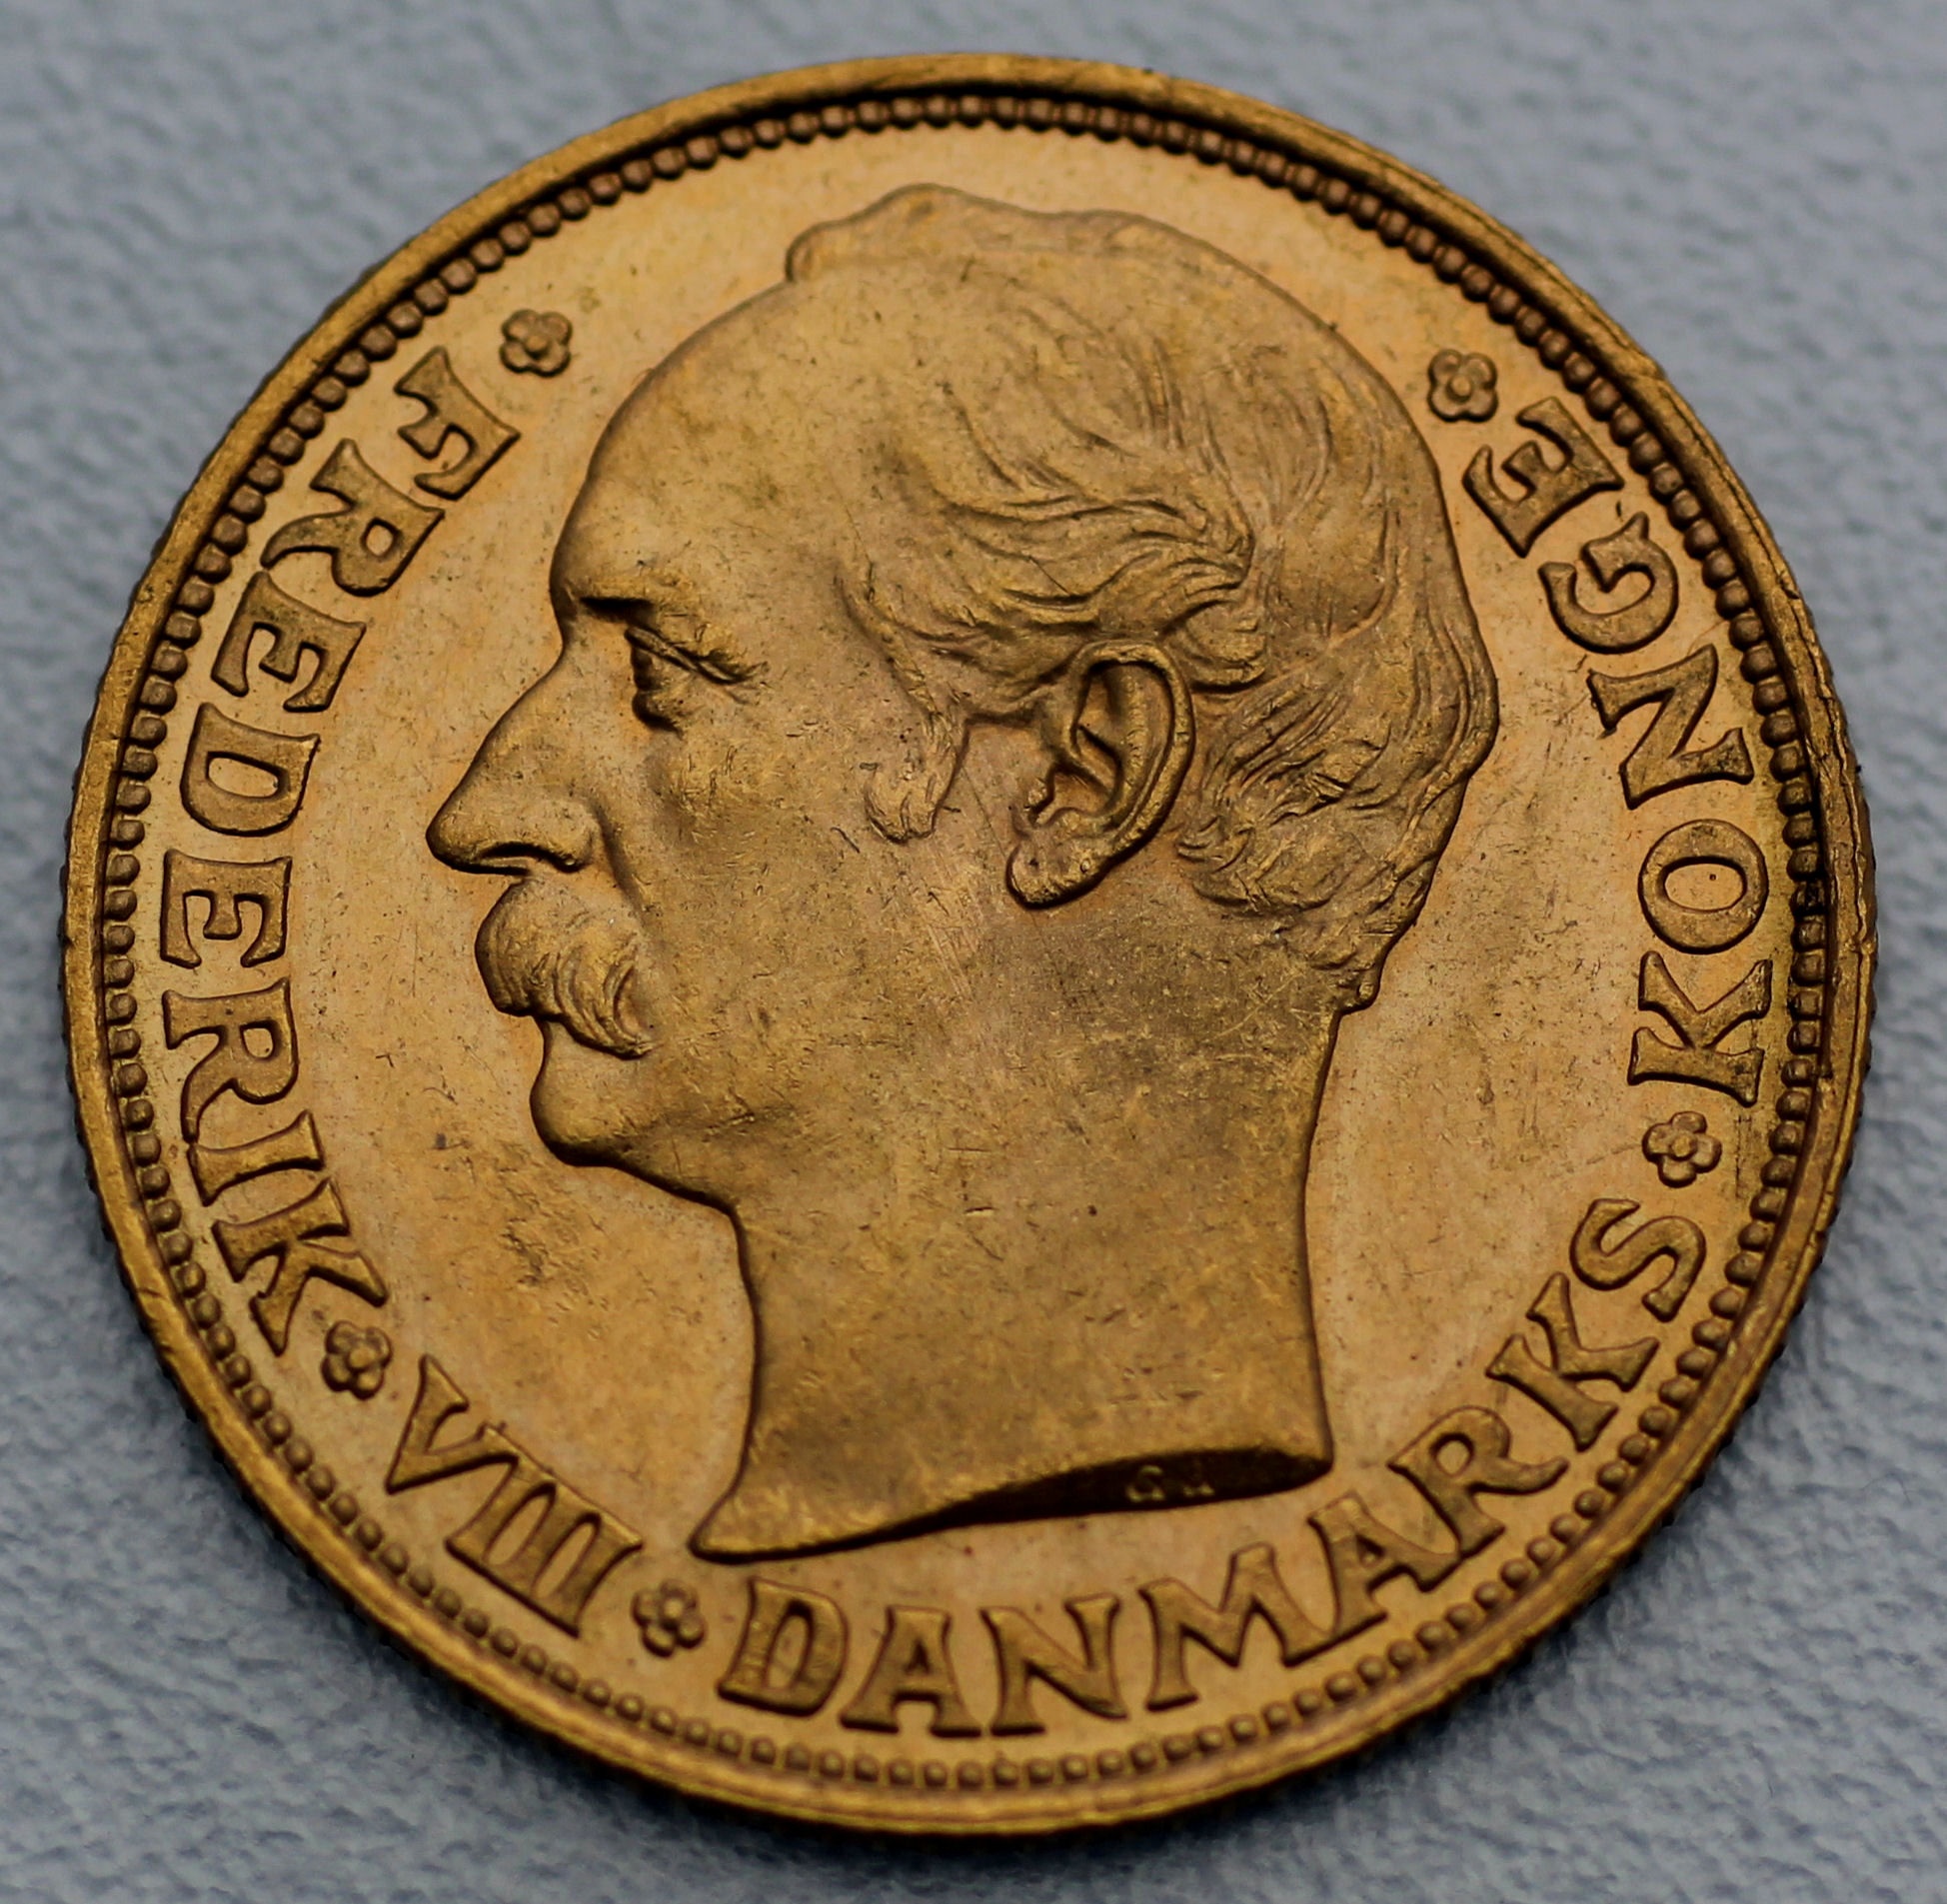 Goldmünze 20 Kronen/Frederik VIII. (Dänemark)